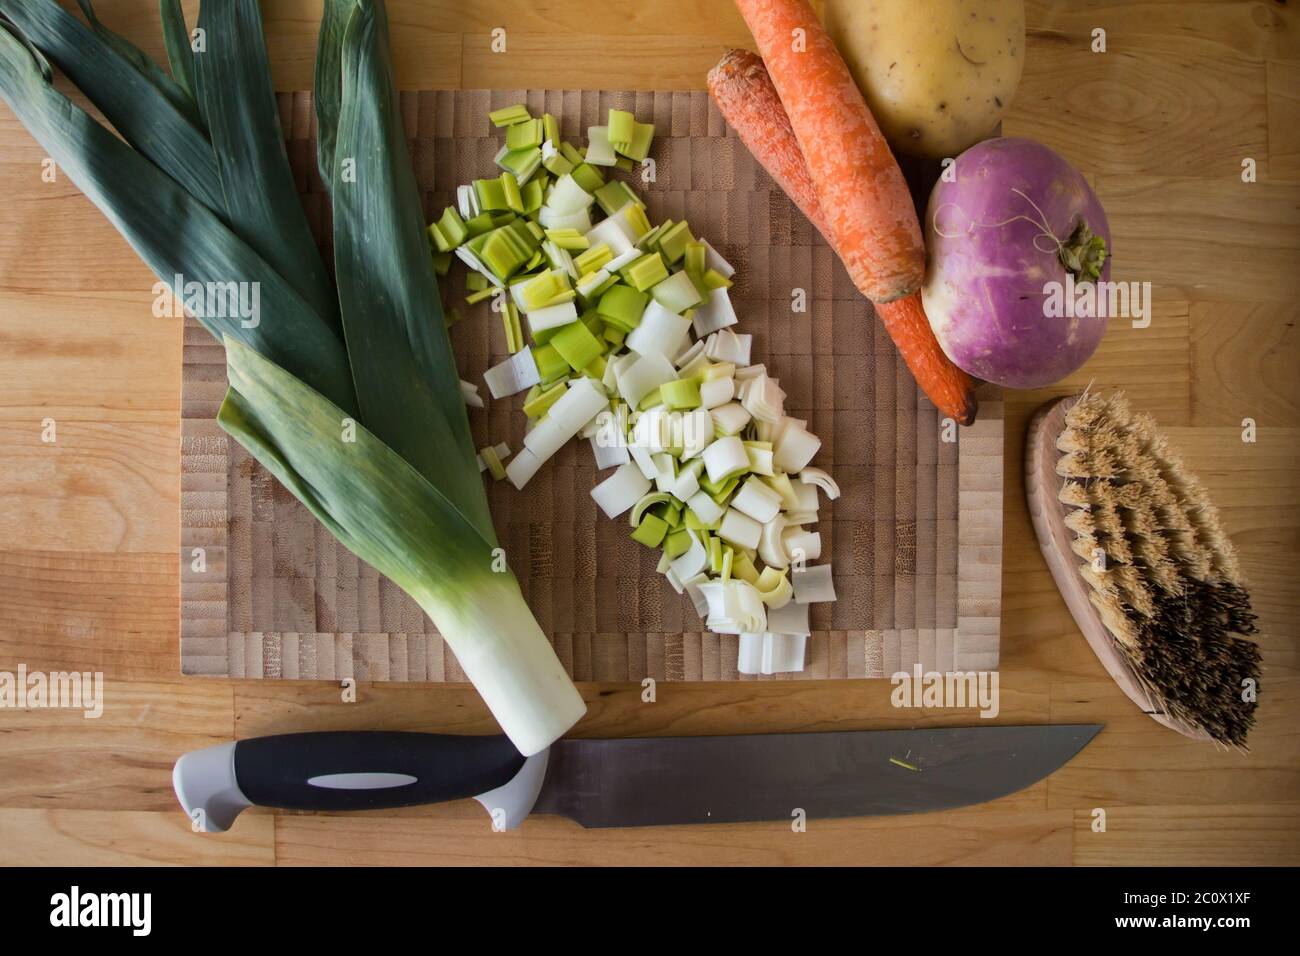 Vue de dessus d'une planche à découper, légumes d'hiver, brosse et couteau sur une table en bois Banque D'Images